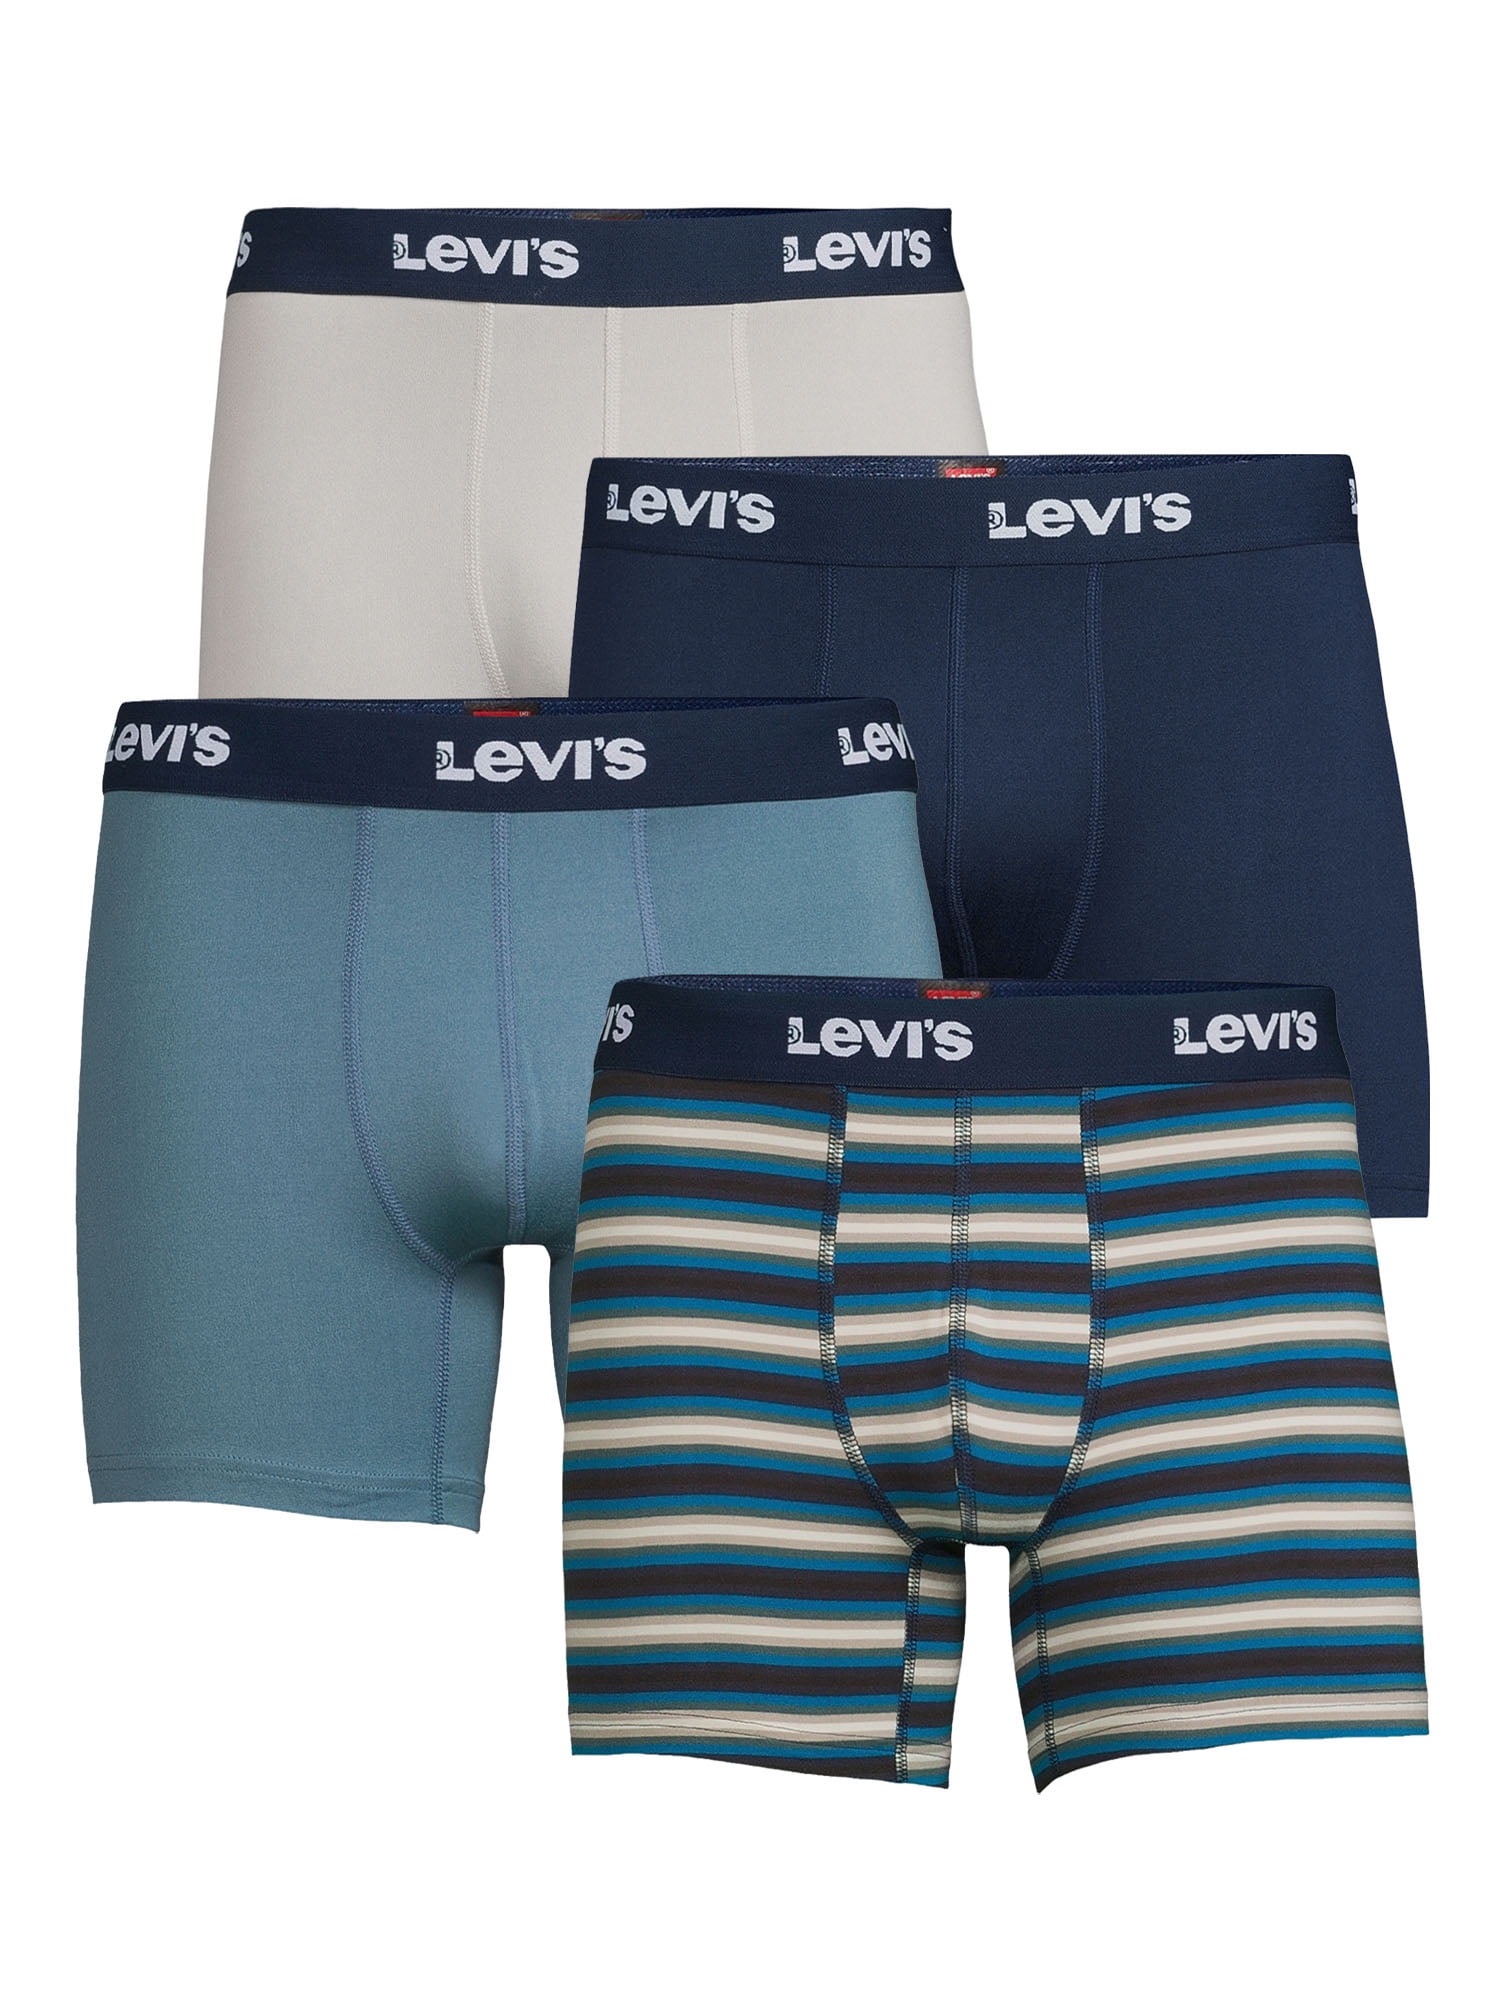 Levi's Men's Microfiber Boxer Briefs, 4-Pack -